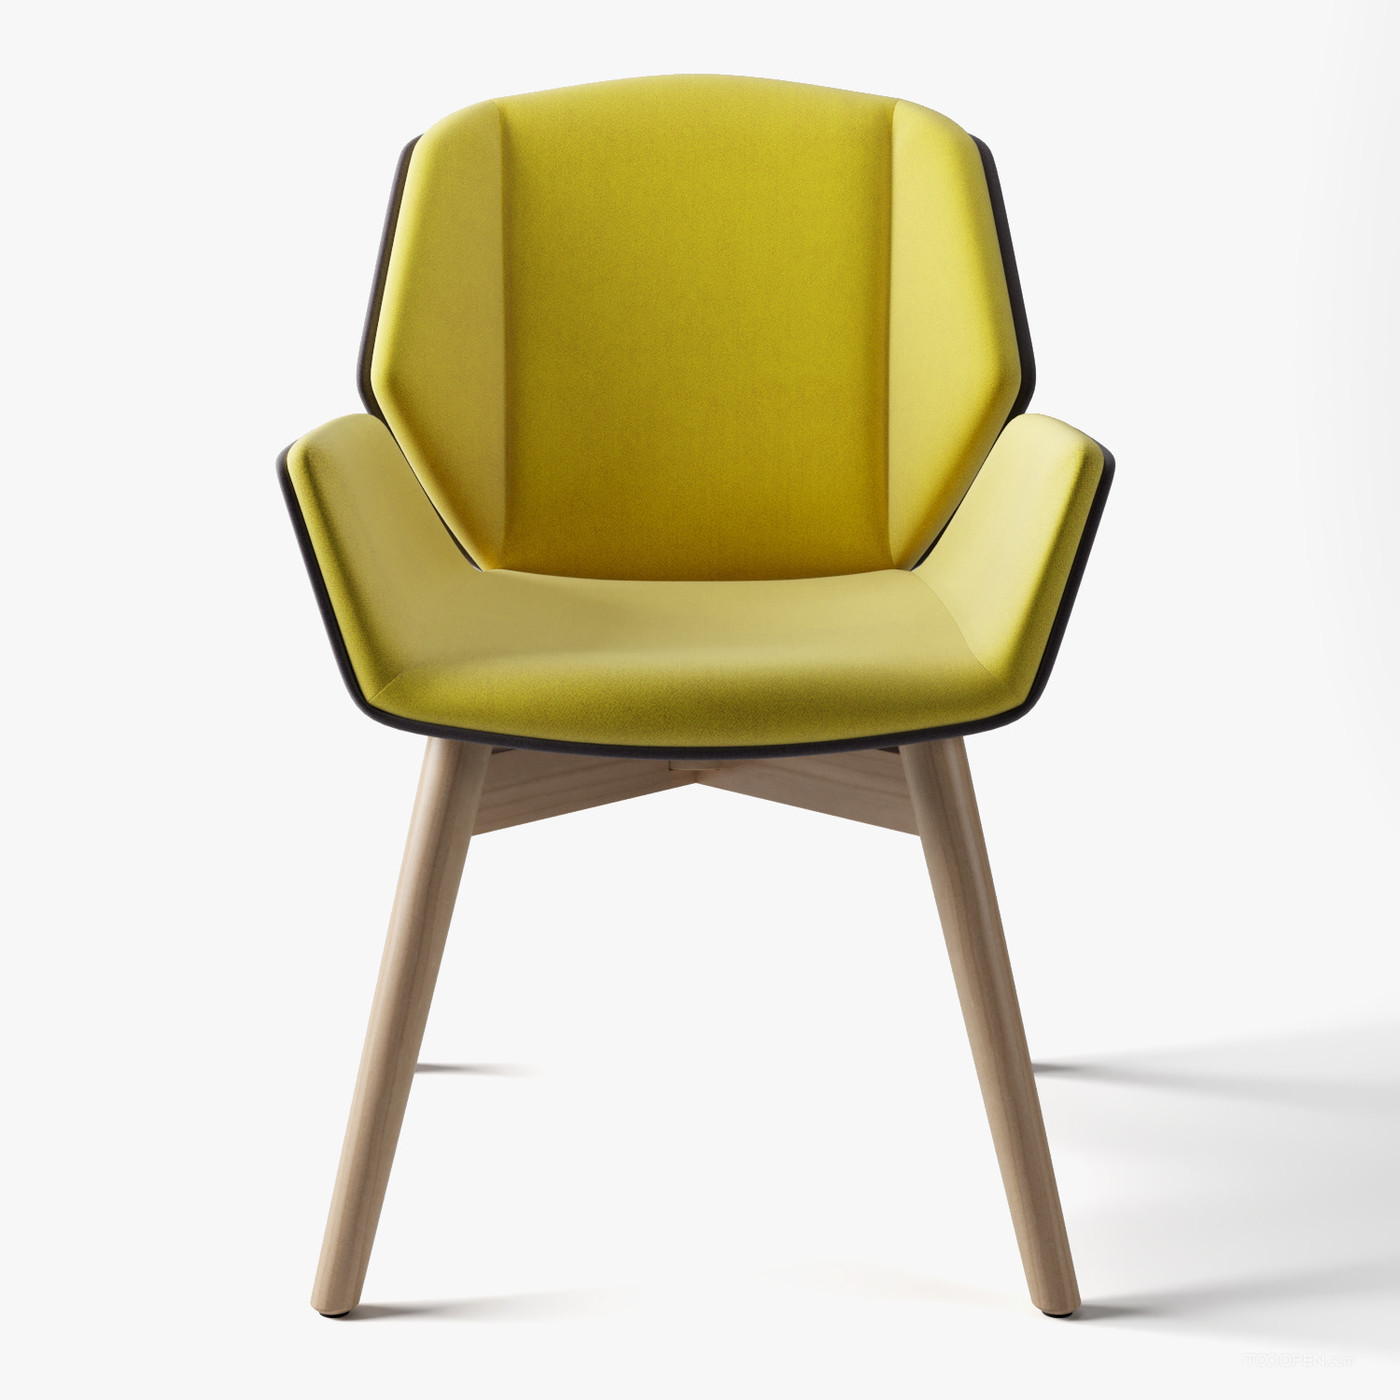 时尚简约风格的椅子家具设计欣赏-03